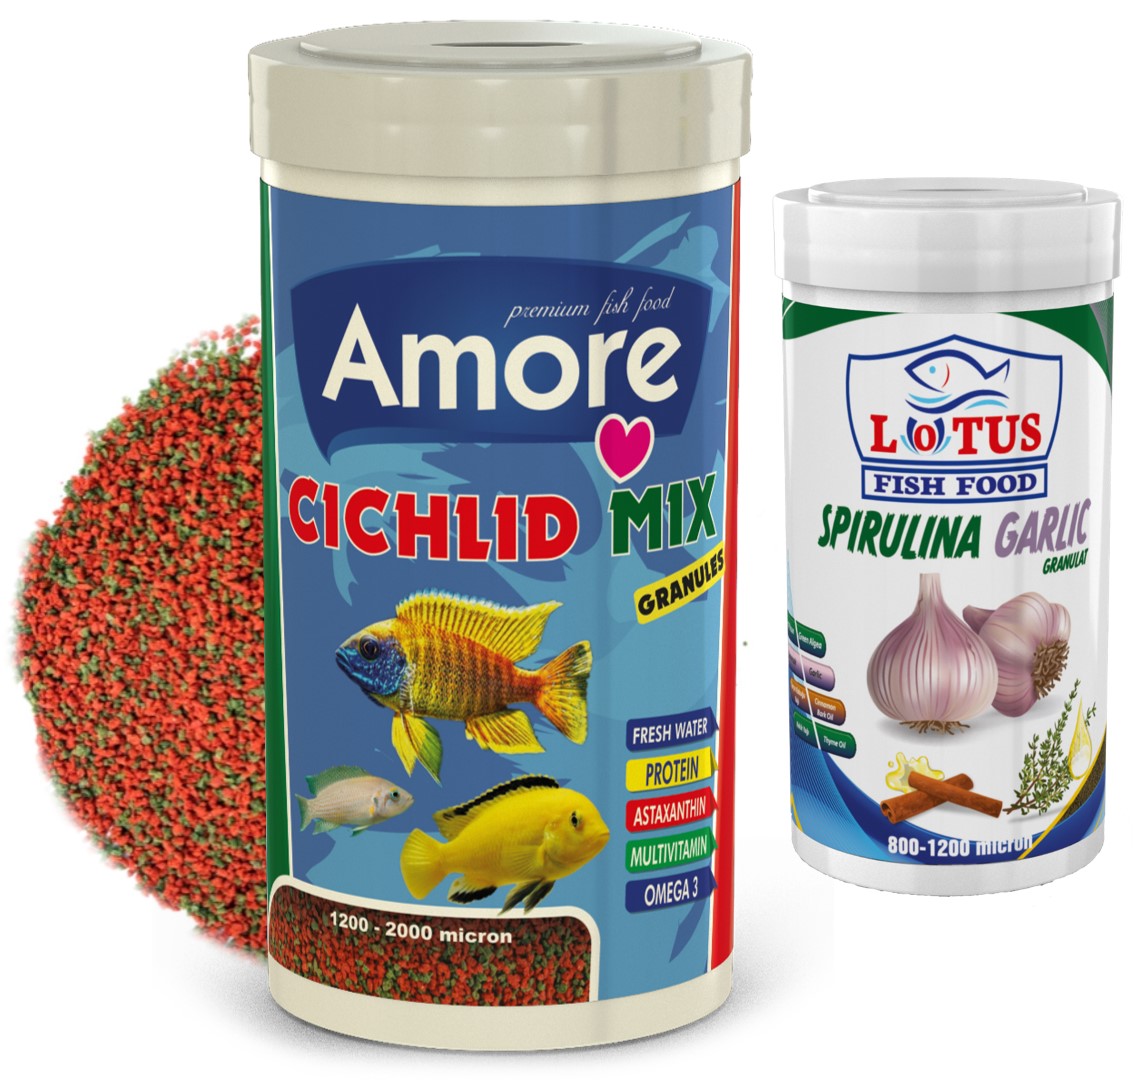 Amore Cichlid Mix Granules 1000ml Ve Lotus Spirulina Garlic 250ml Balık Yemi